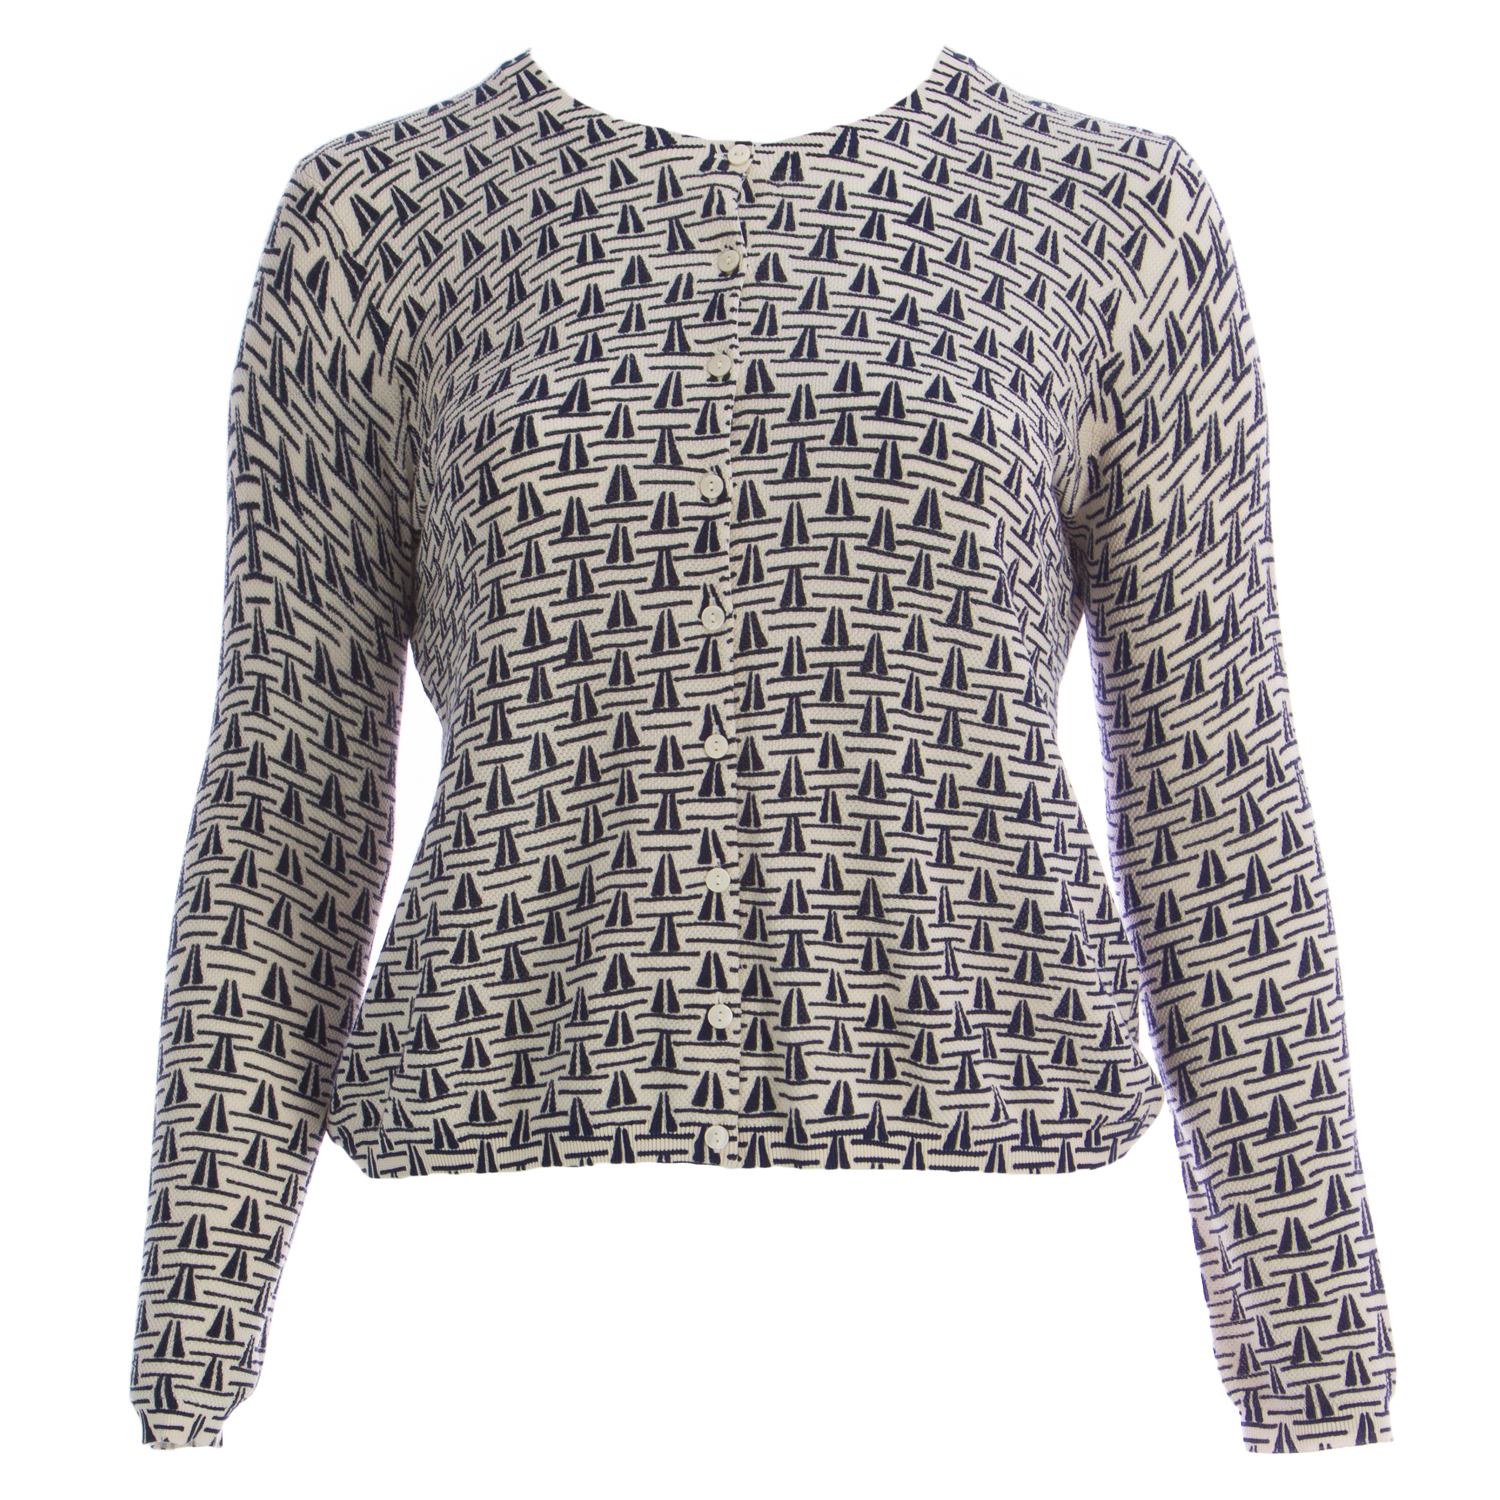 MARINA RINALDI Women's Grey/Cream Azione Colorblock Sweater $465 NWT